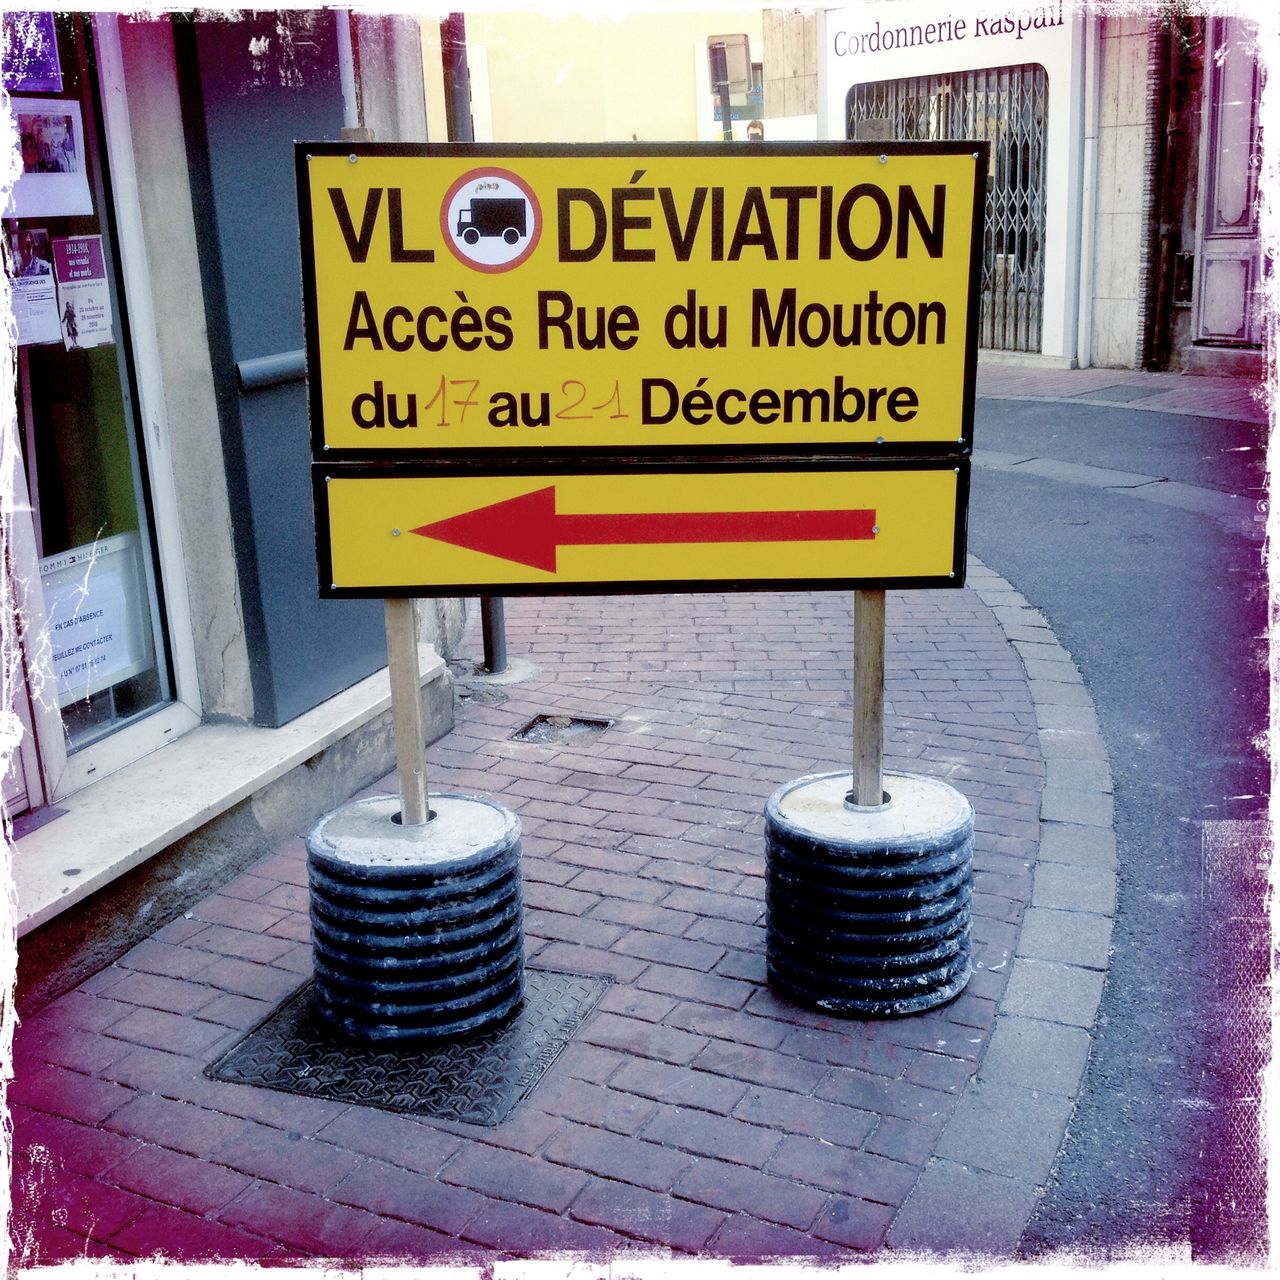 Französische Sprache auf einem großen, gelben, rechteckigen Umleitungsschild auf einem innerstädtischen Gehweg, der durch das Schild fast vollständige verstellt wird.